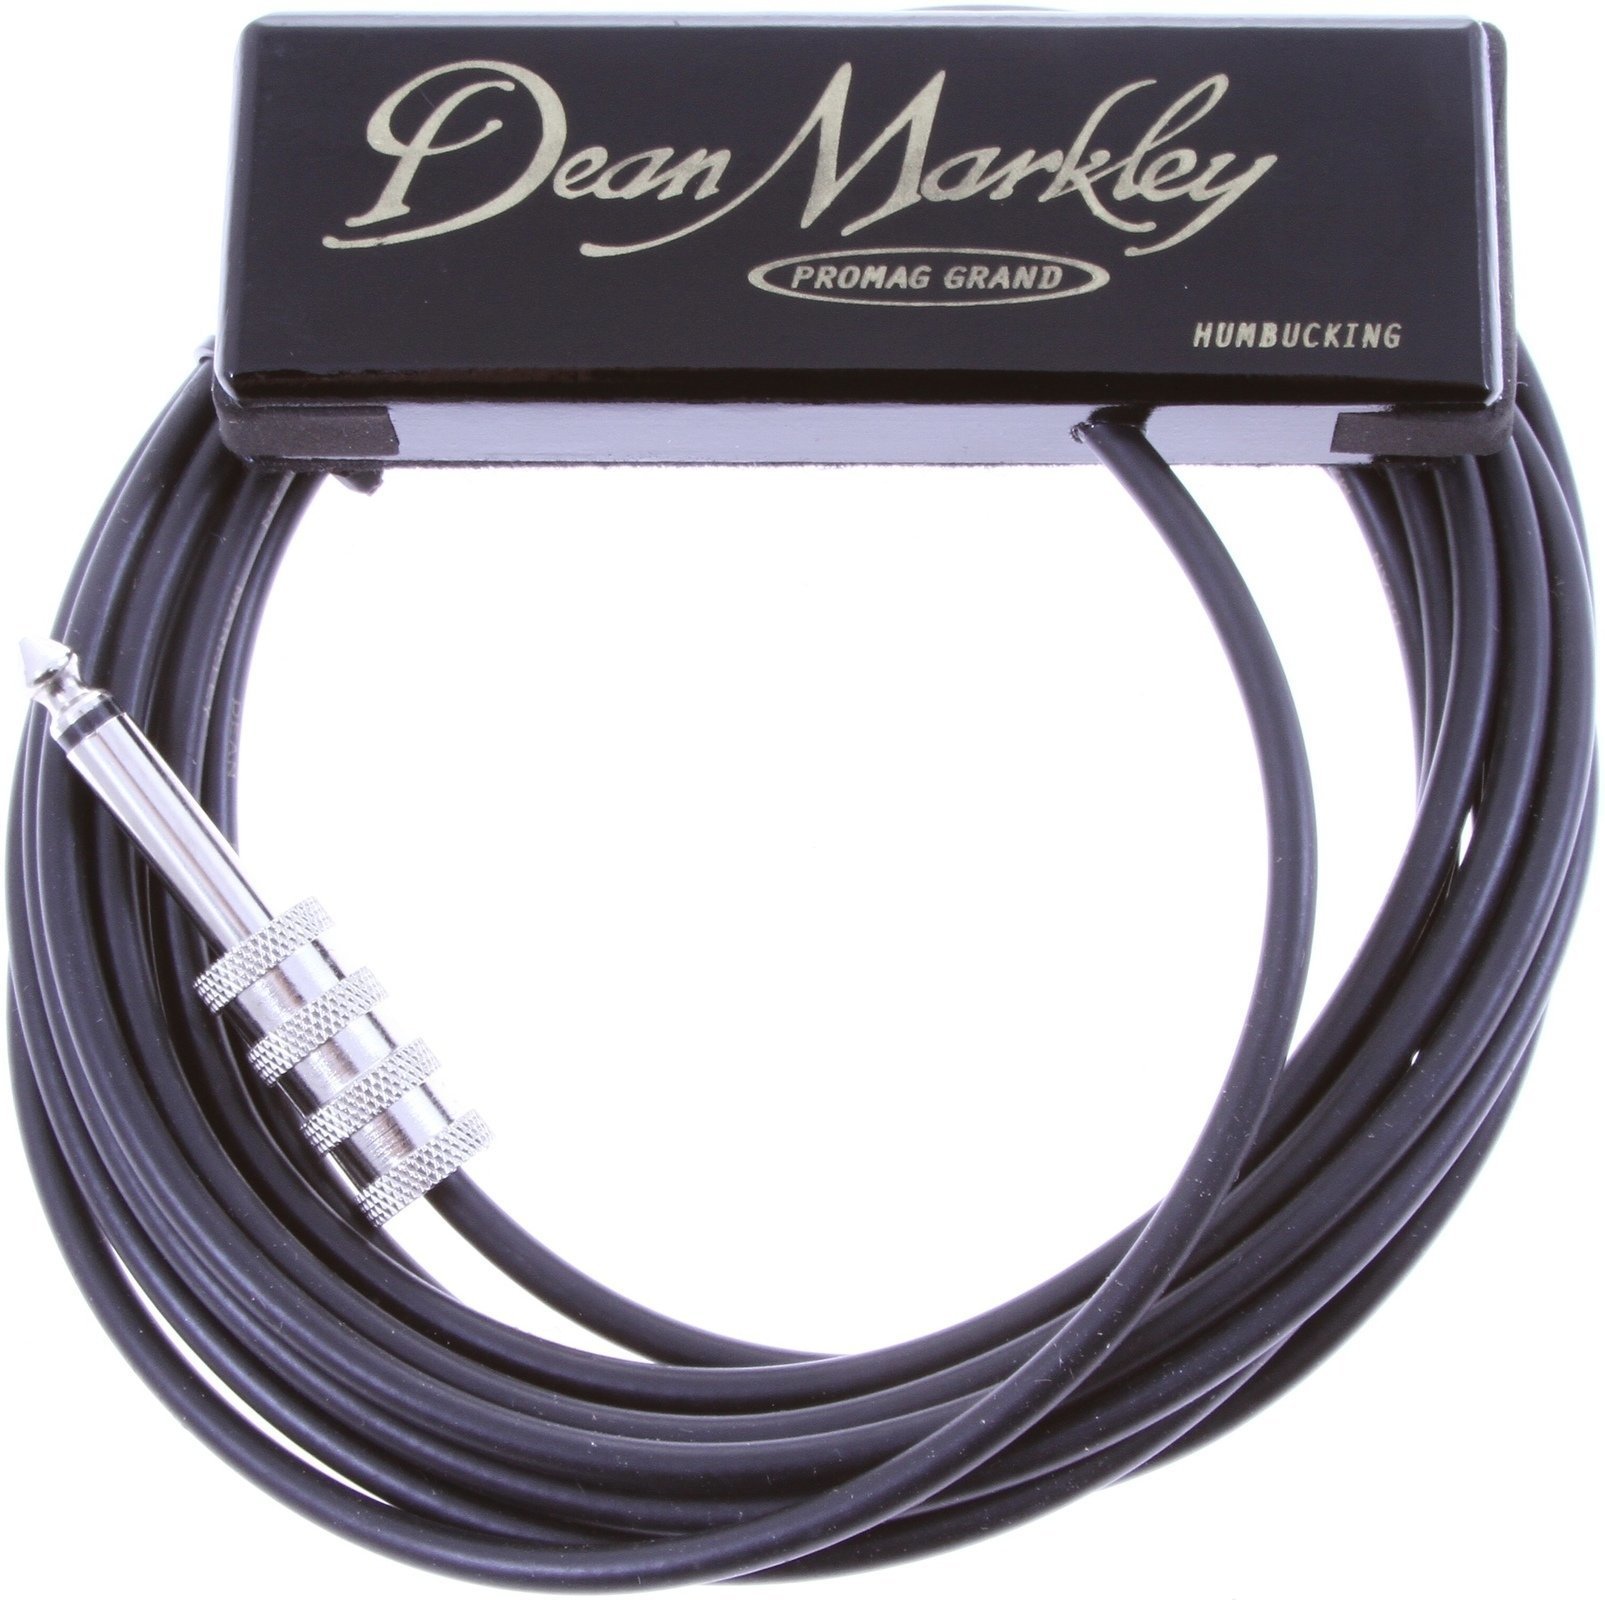 Snímač pre akustickú gitaru Dean Markley 3015 ProMag Grand Snímač pre akustickú gitaru